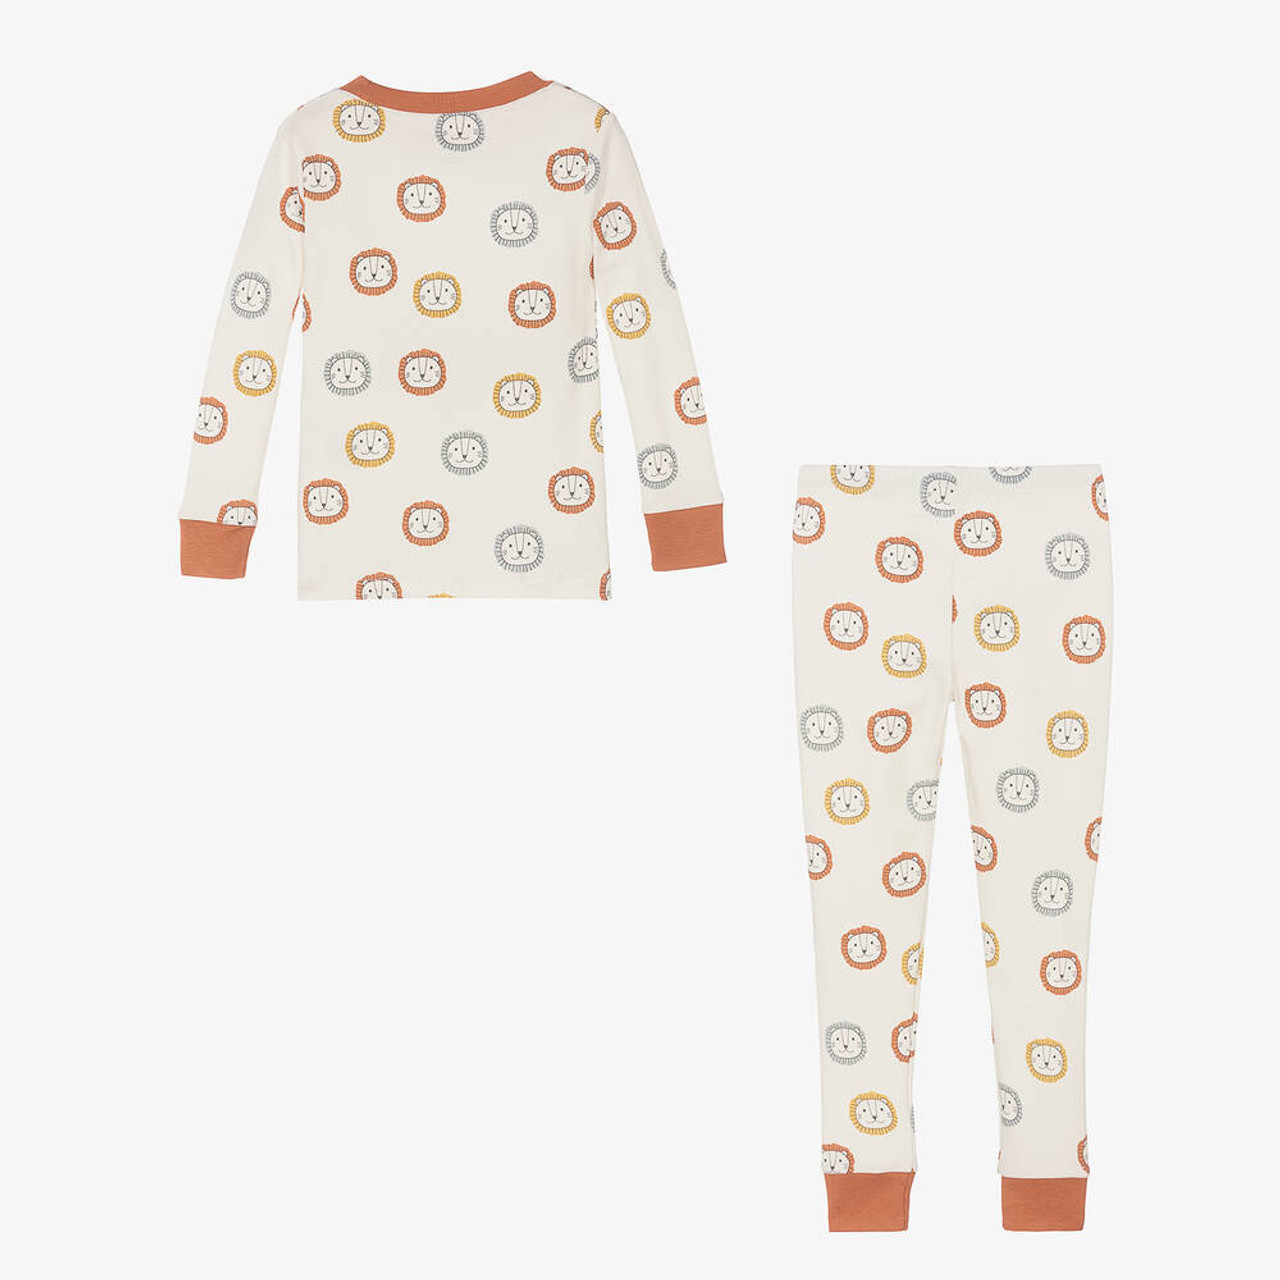 Cute Pajama Set -  Canada